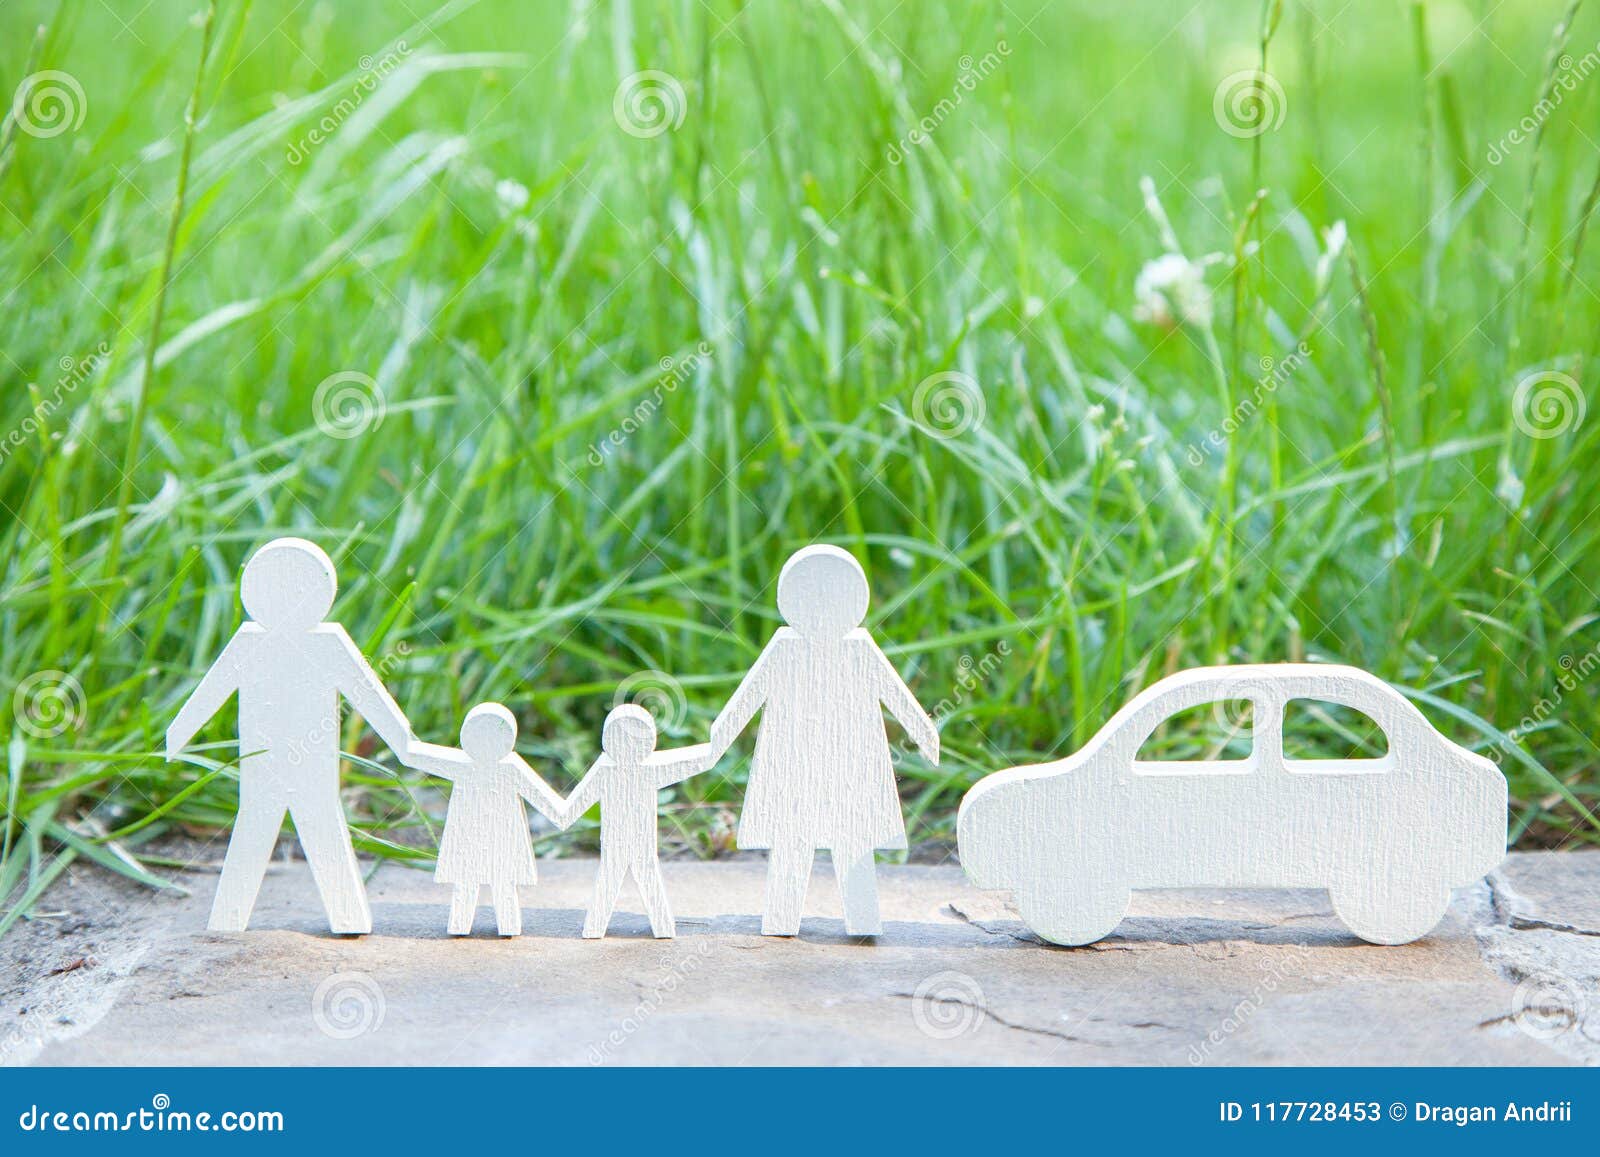 Aonde ir por um feriado na natureza da família pelo carro? Paizinho, mamã, filho e filha perto do carro em um fundo da grama verde